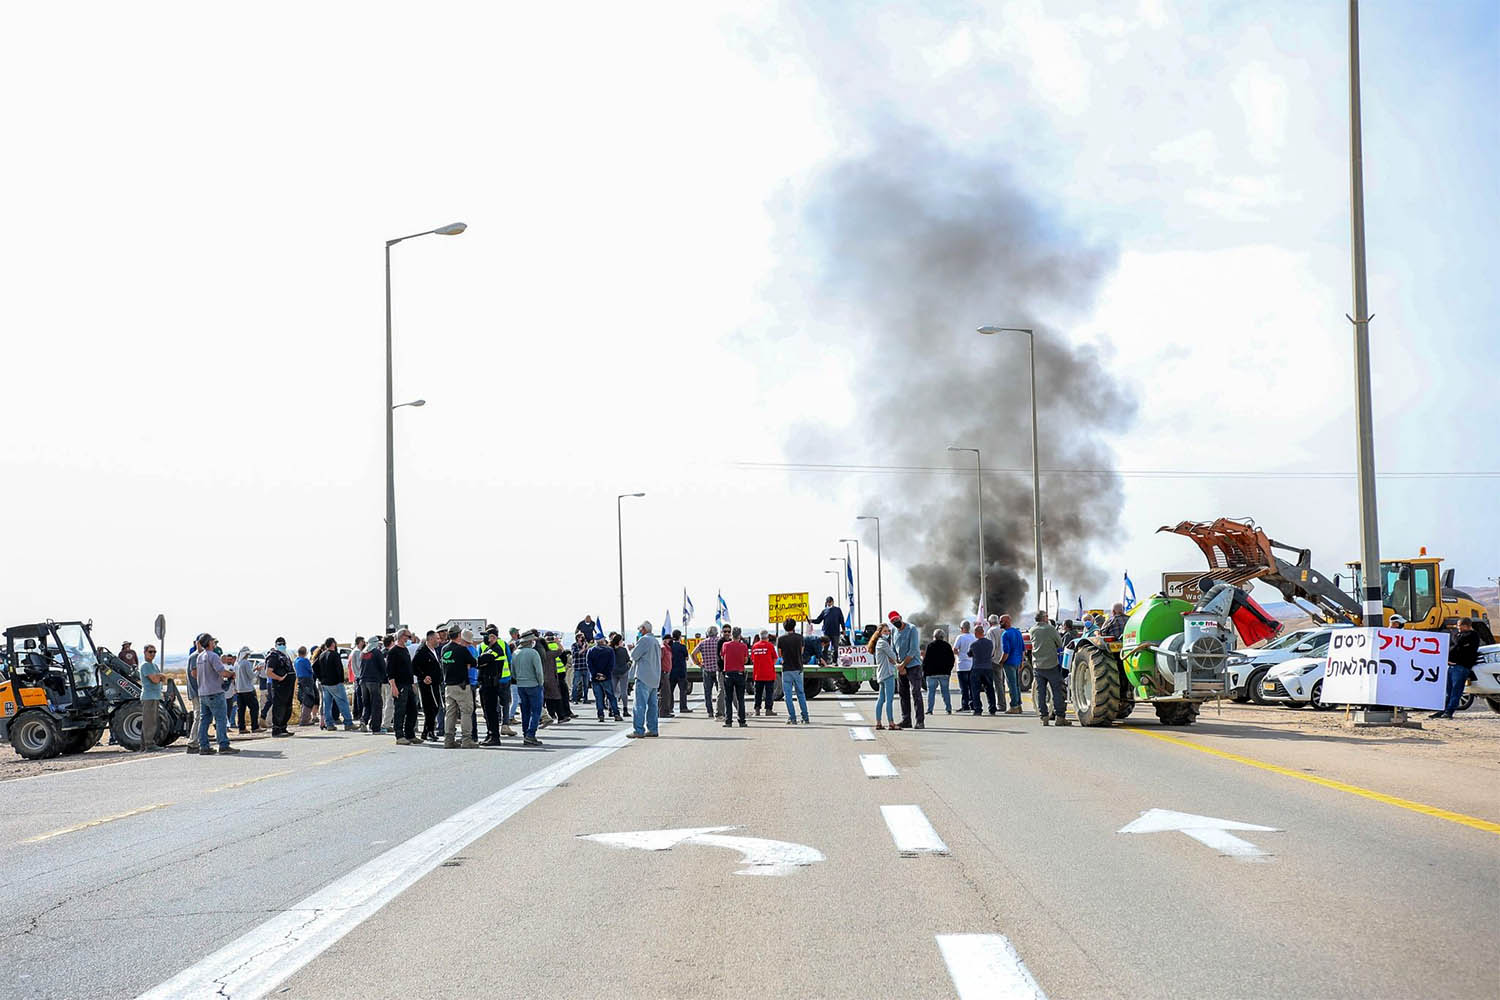 הפגנת חקלאים בכביש הערבה. (צילום: תם אלדר)